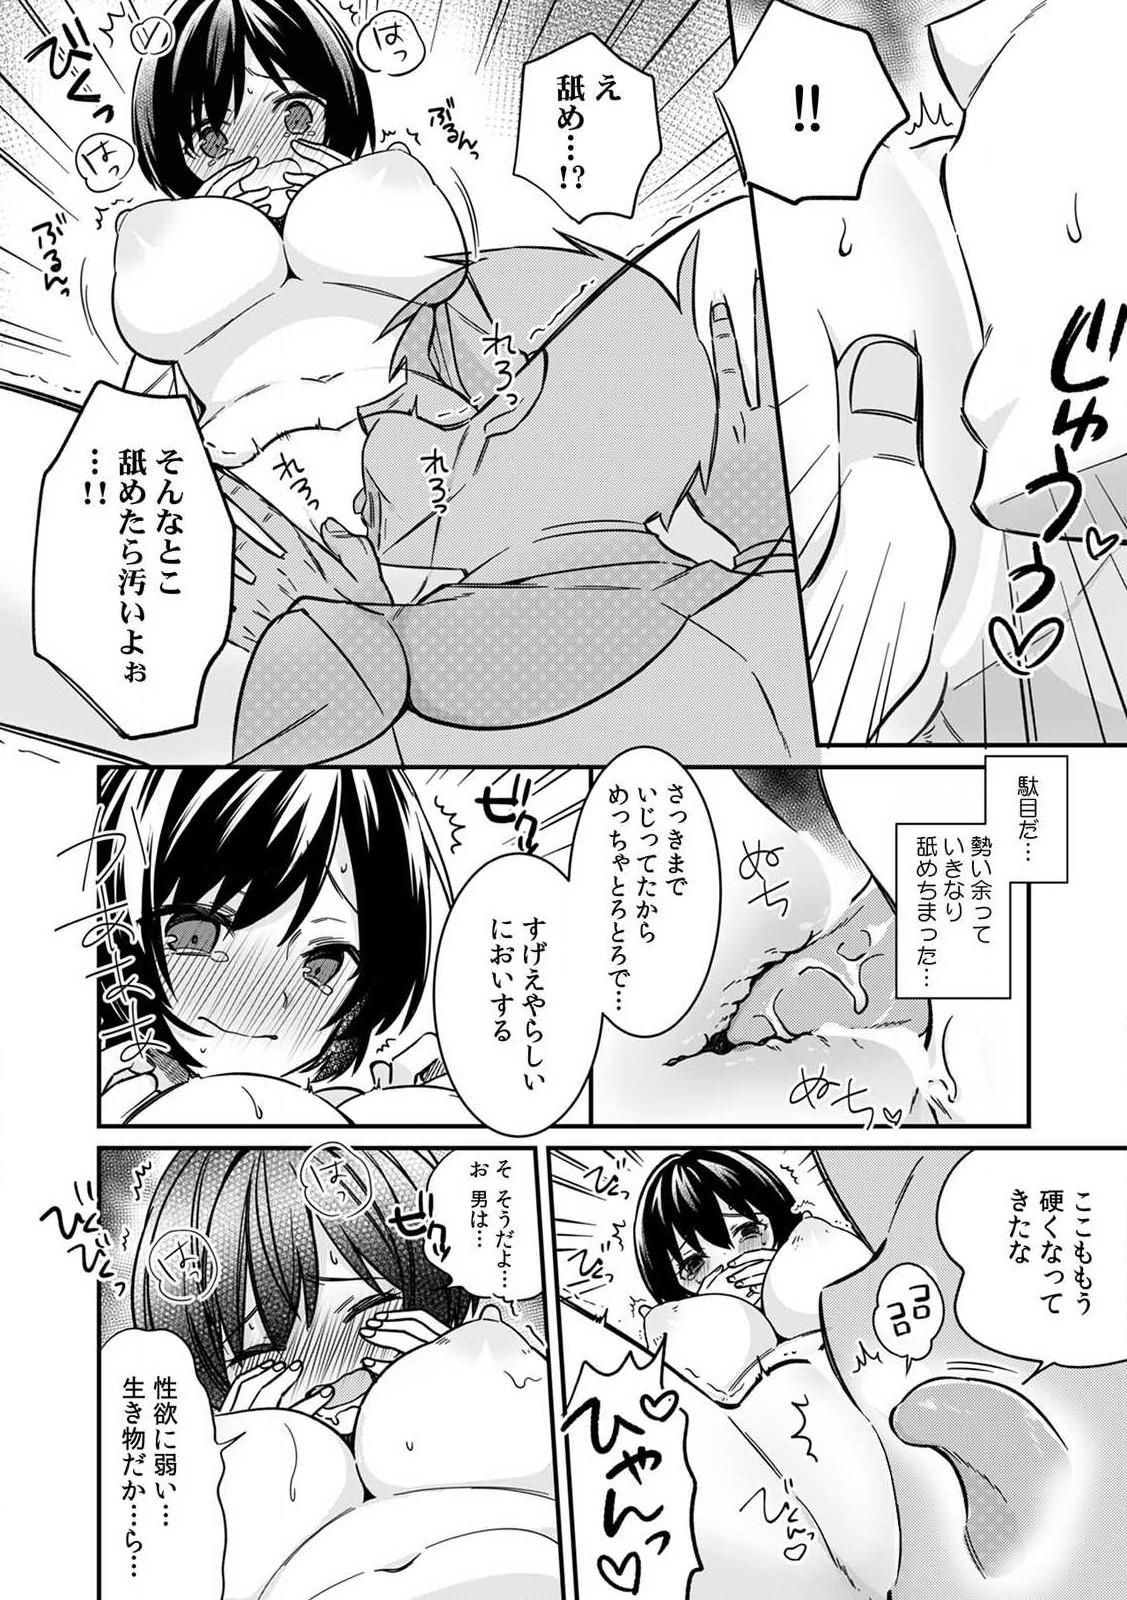 Massage "Asoko no Kyunkyun ga Tomaranai noo...!" Baretara Out!? Dansou Kyonyuu ♀ to Chikan Manin Densha 2 Chicks - Page 6